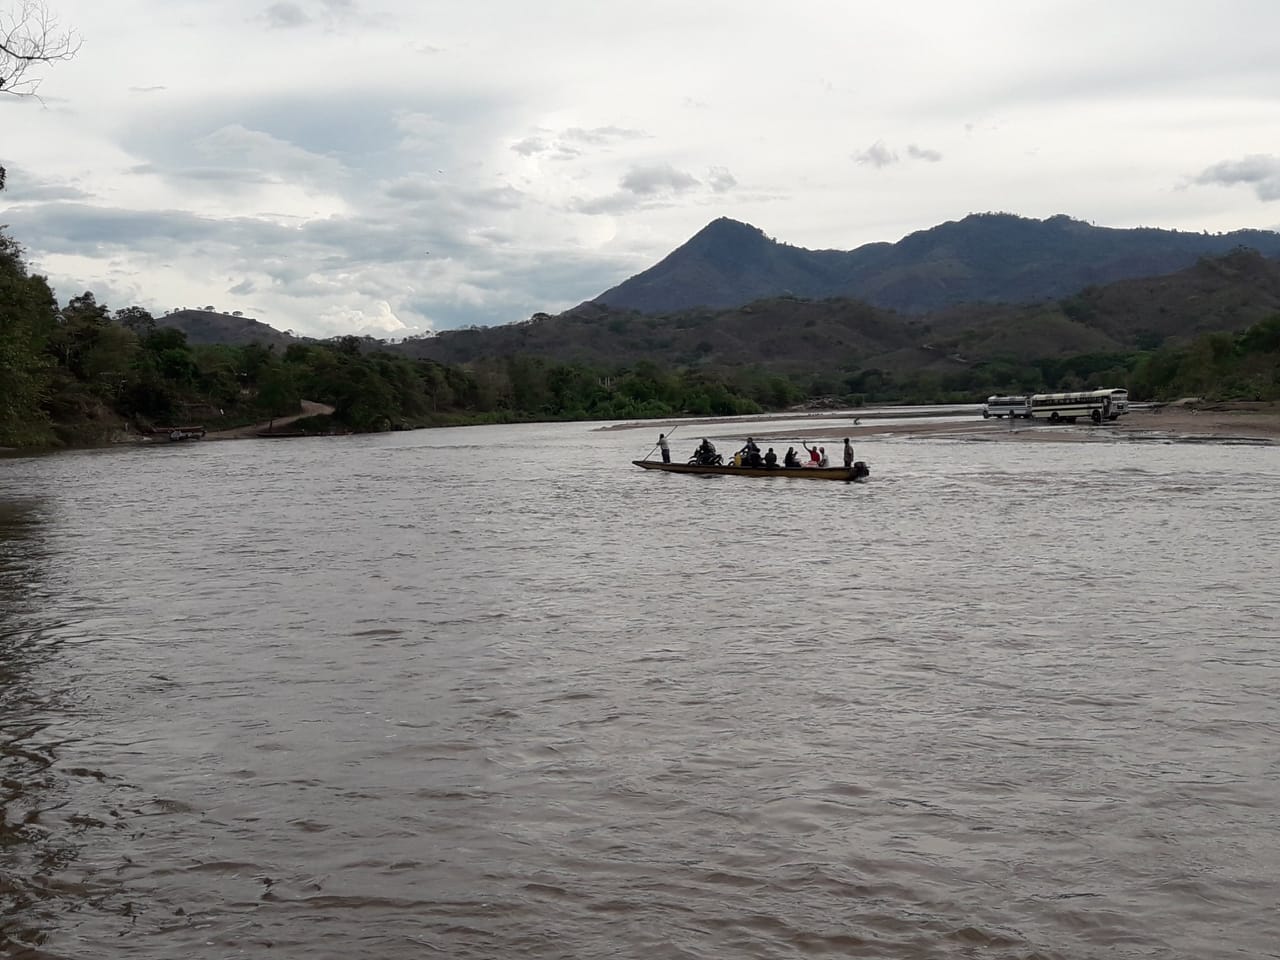 Rio Coco in Wiwili-Jinotega (photo by Ian Vellenga)